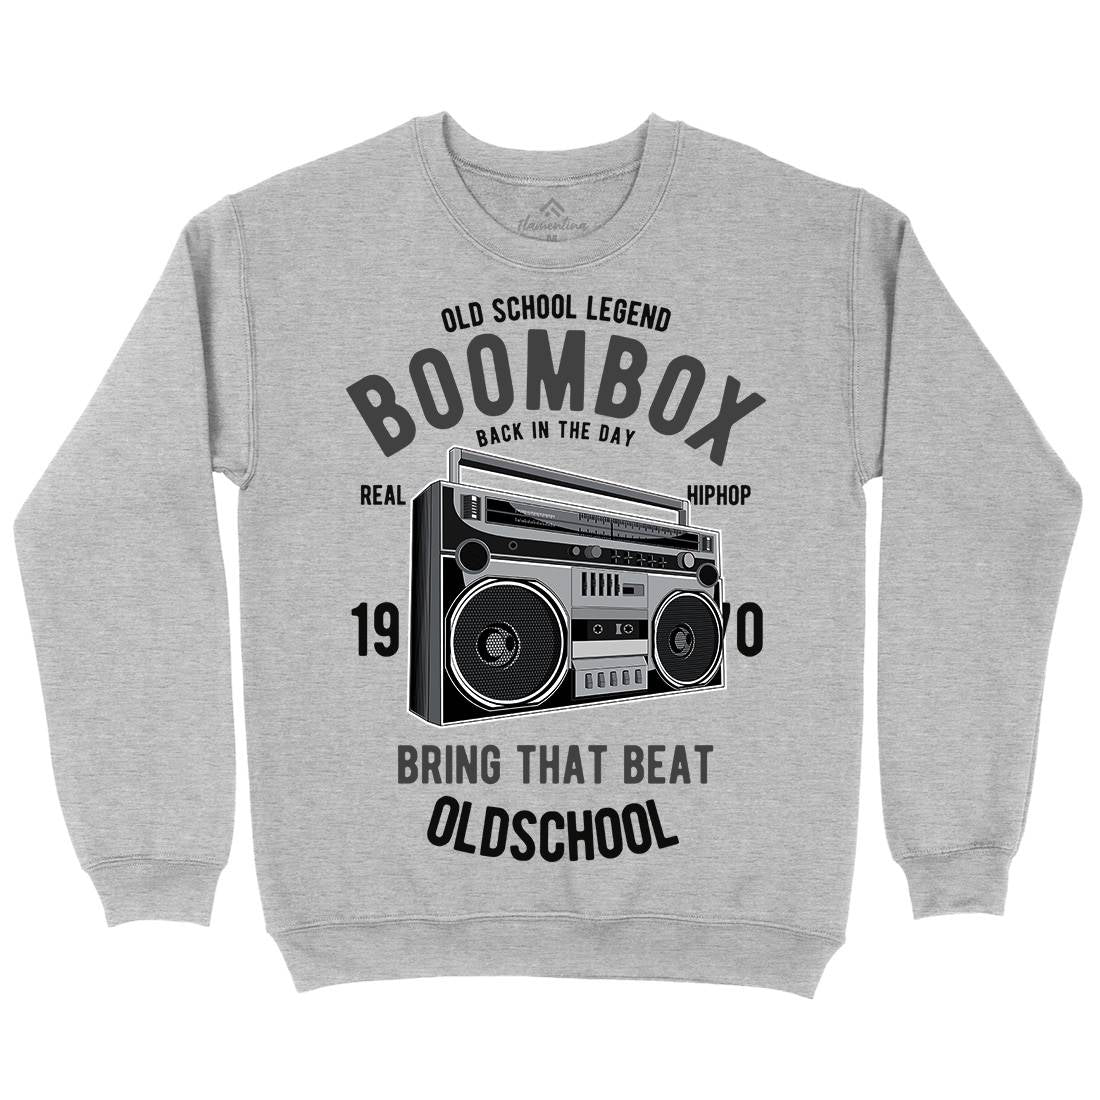 Boombox Mens Crew Neck Sweatshirt Music C319